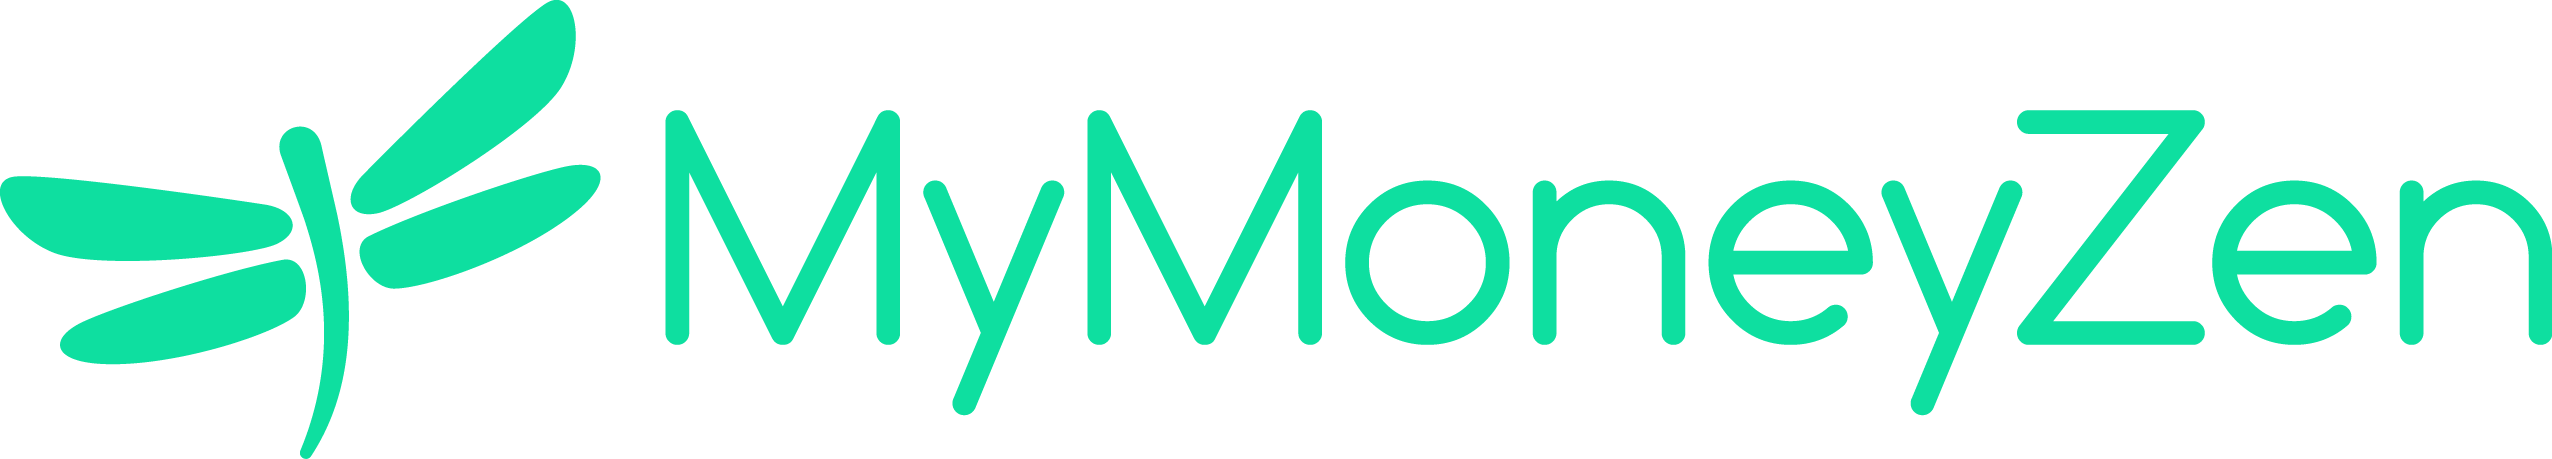 MyMoneyZen logo